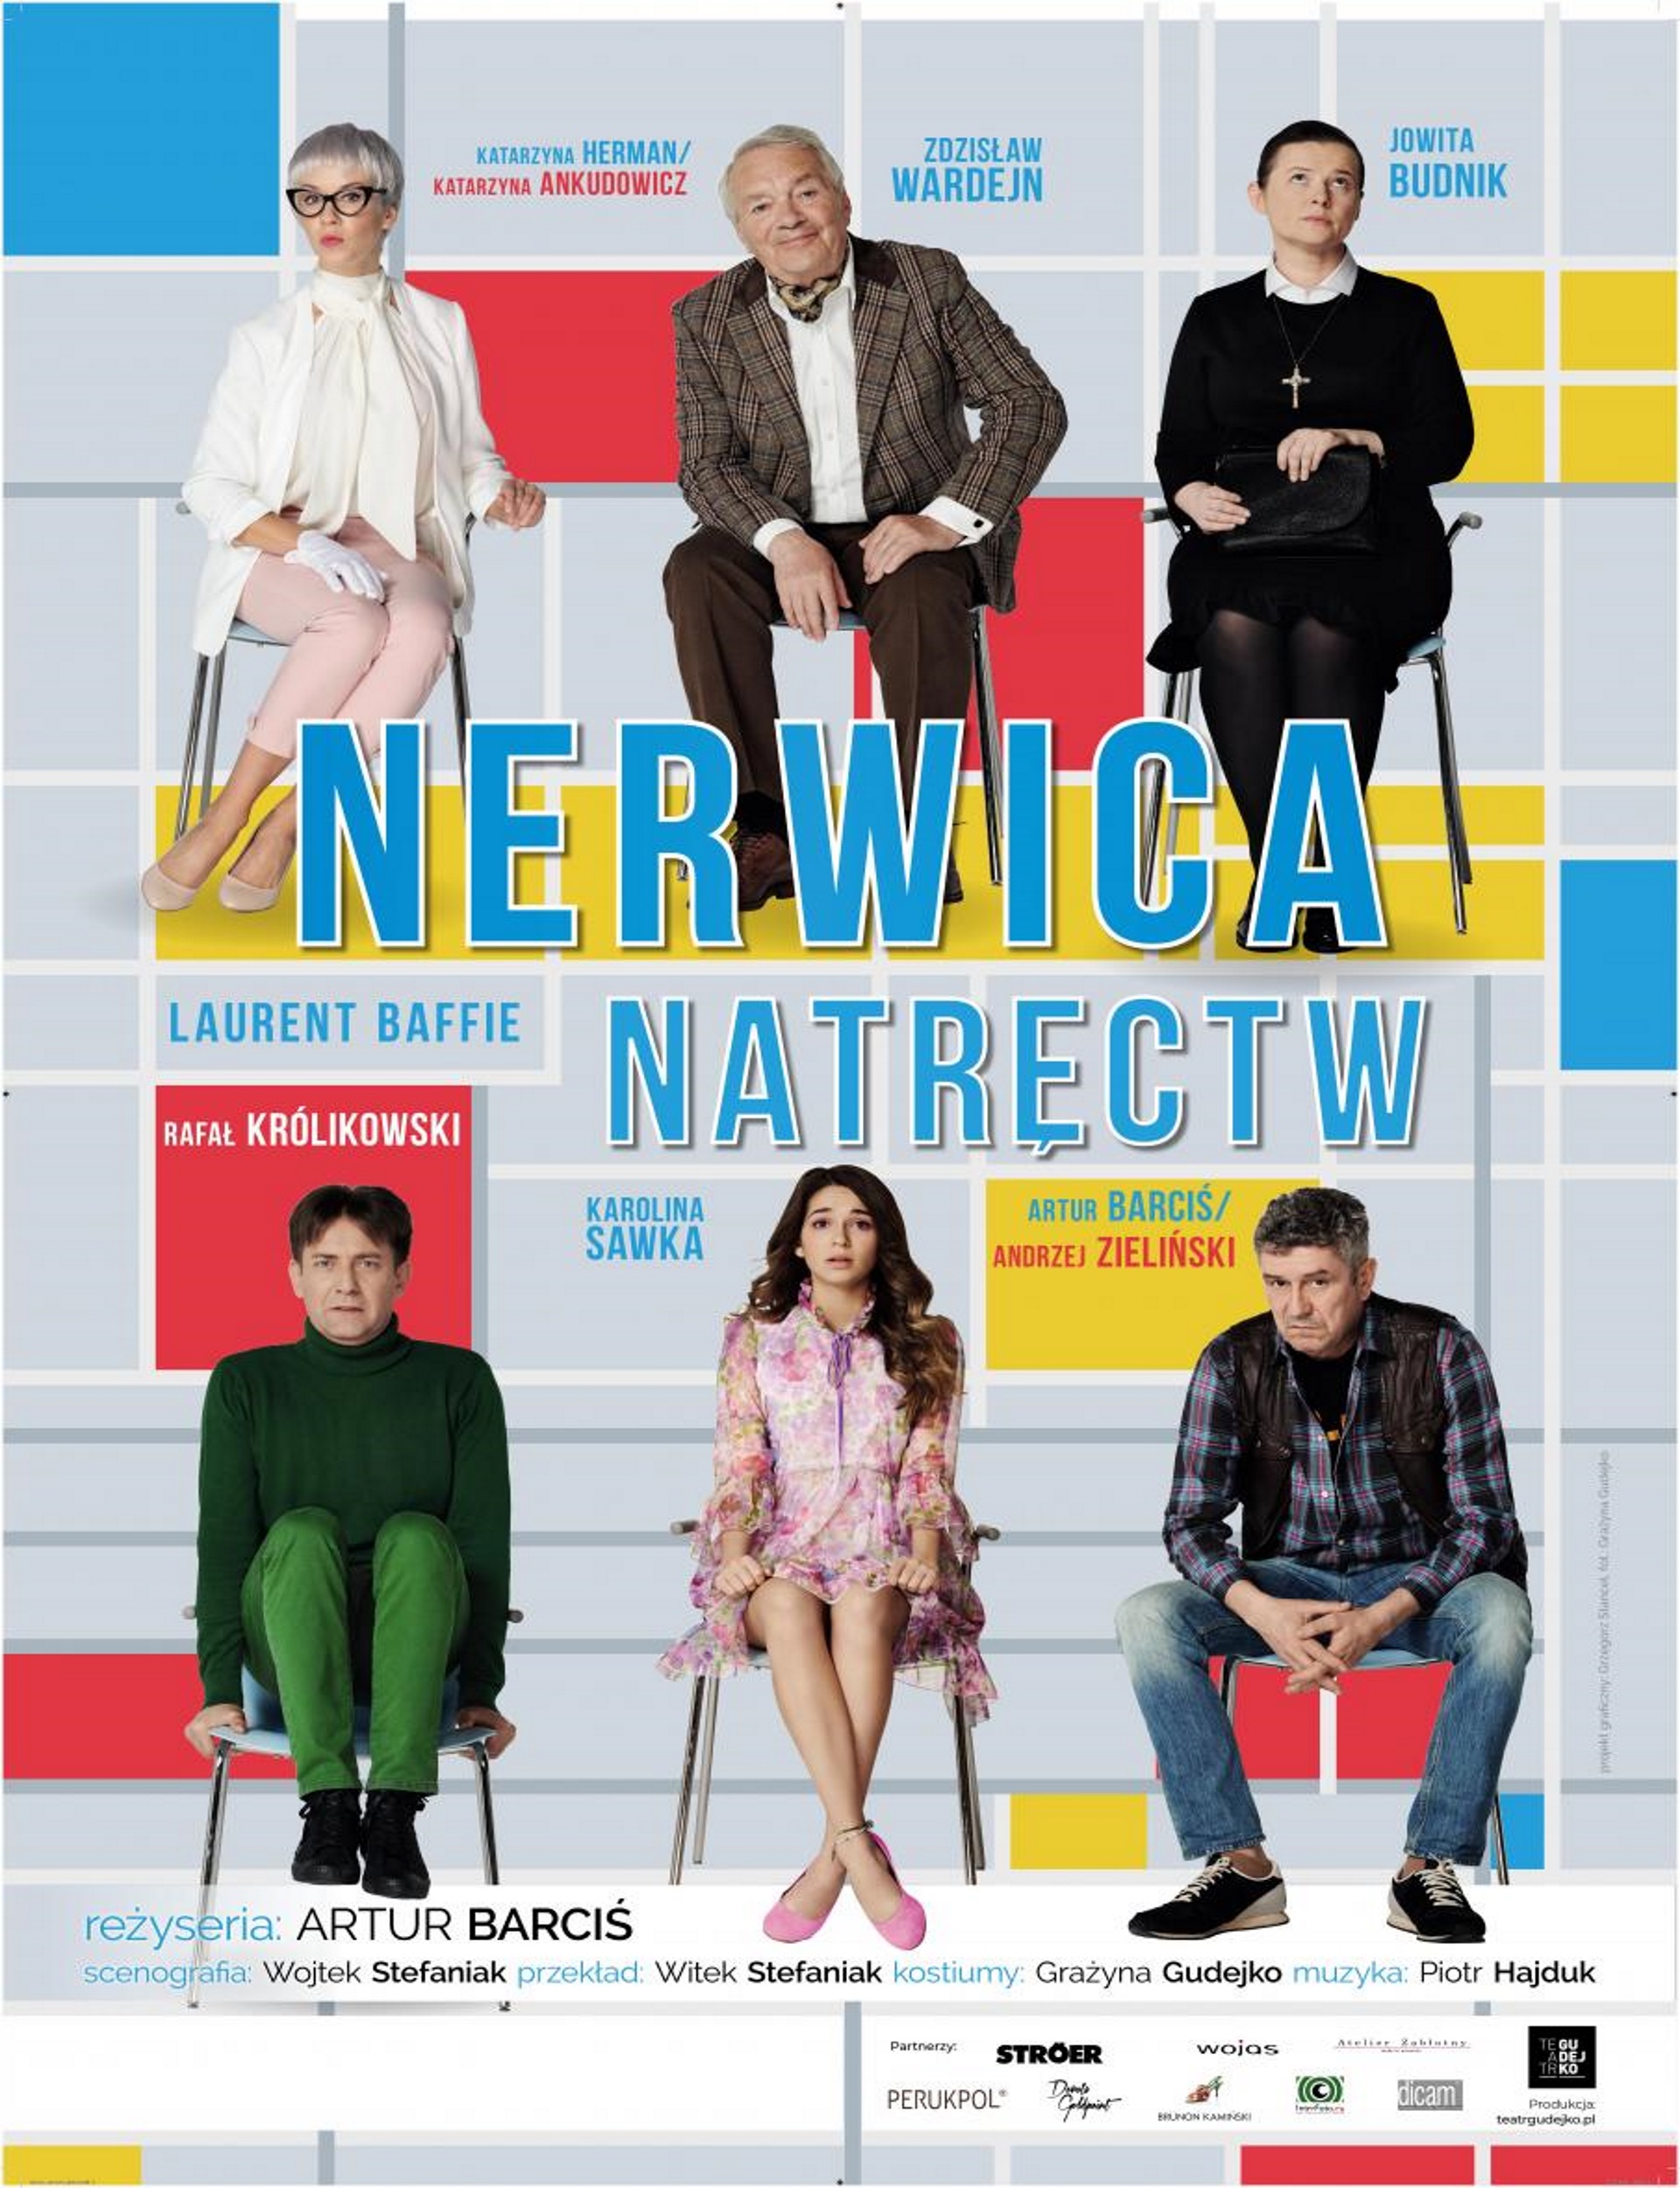 Zdjęcie - plakat zapraszający na komedię teatralną "Nerwica Natręctw". Na plakacie zdjęcia siedzących sześciu aktorów występujących w komedii.  